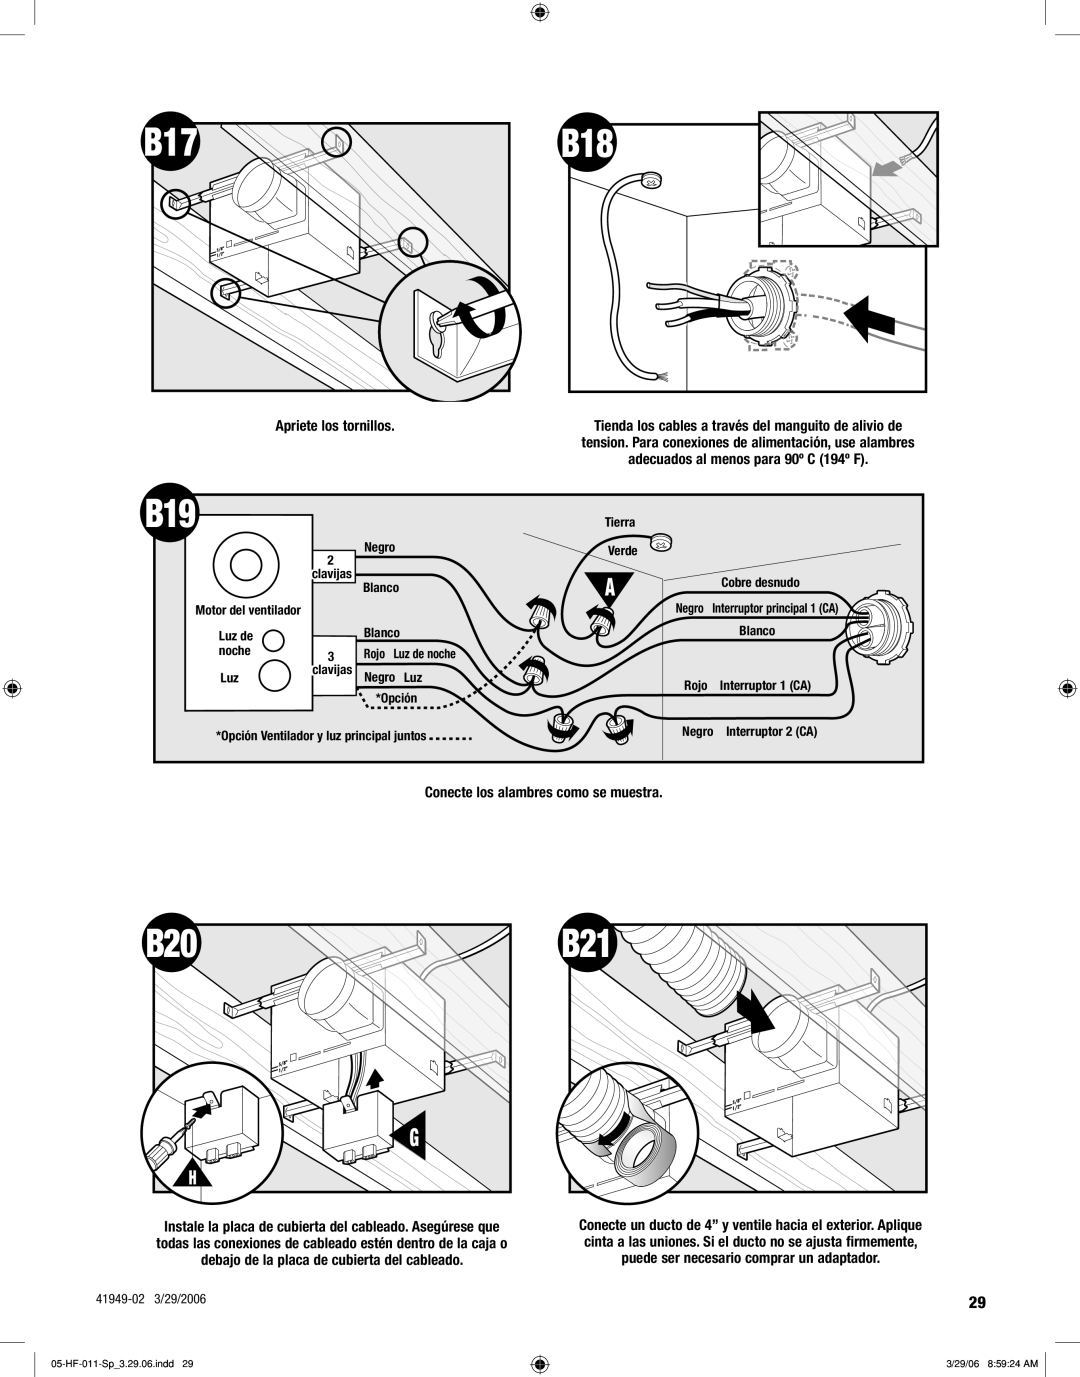 Hunter Fan 83001 manual Apriete los tornillos, Conecte los alambres como se muestra 